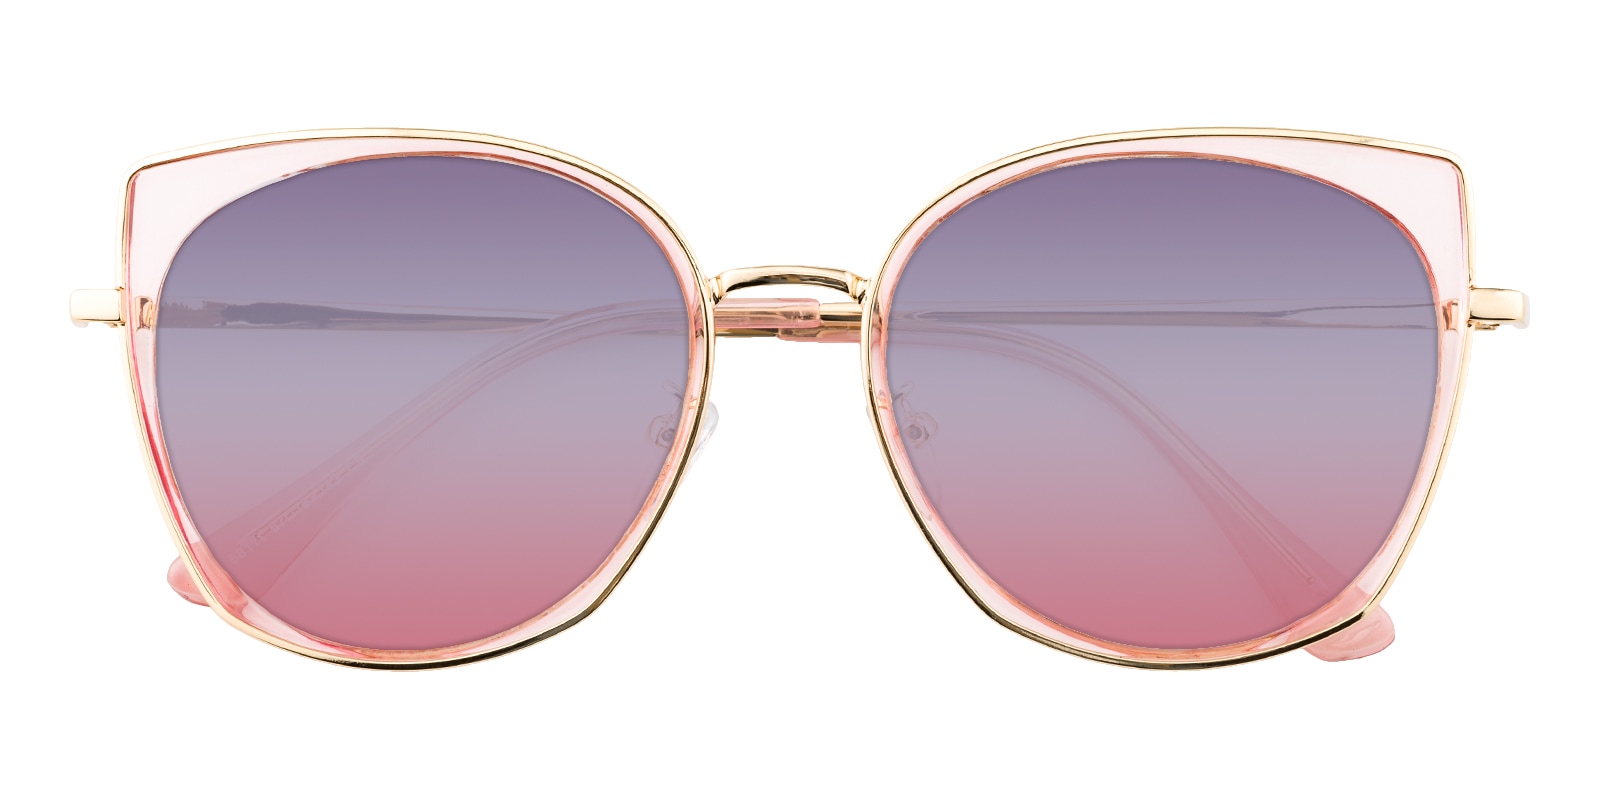 Cat Eye Sunglasses, Full Frame Pink Plastic,Metal,blend Material - SUP0624